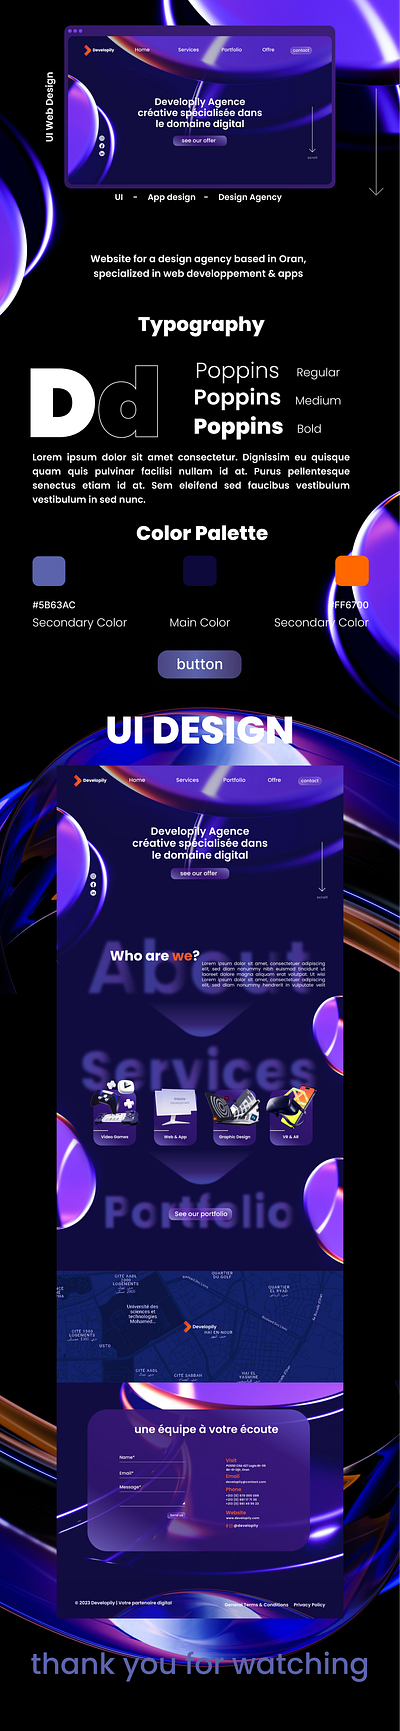 UI Design Development Agency agency branding design design agency development figma figma design graphic design ui ui design ui web uifigma